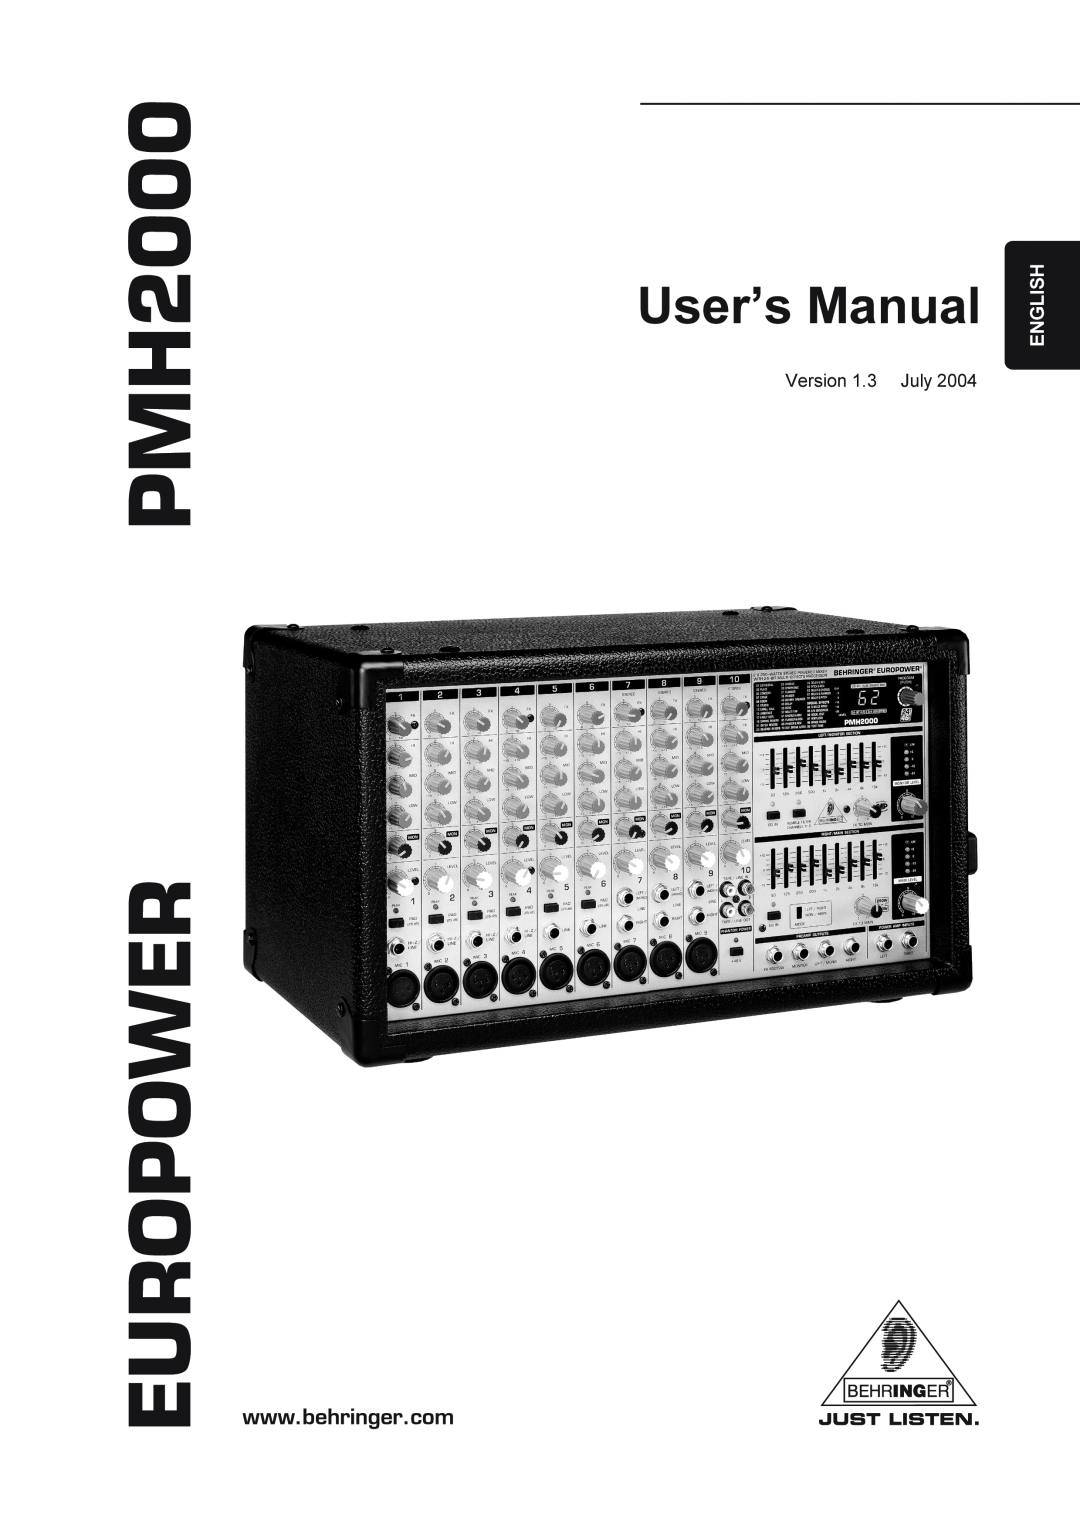 Behringer Power Mixer manual Version 1.3 July, EUROPOWER PMH2000, User’s Manual, English 